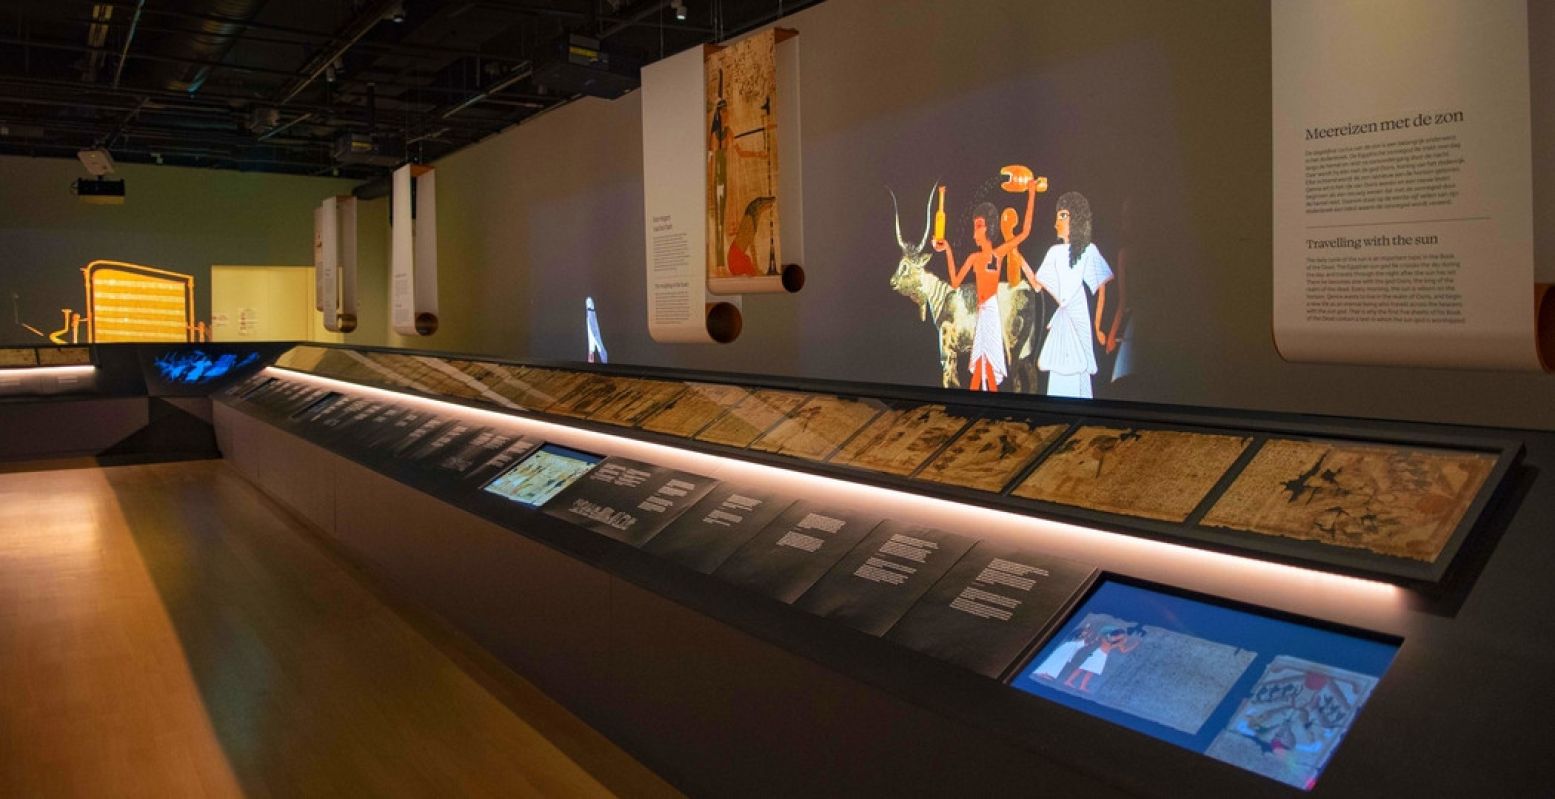 Een kijkje in de expositie, met rechts de vellen papyrus, animaties en teksten met uitleg. Foto: Rijksmuseum van Oudheden